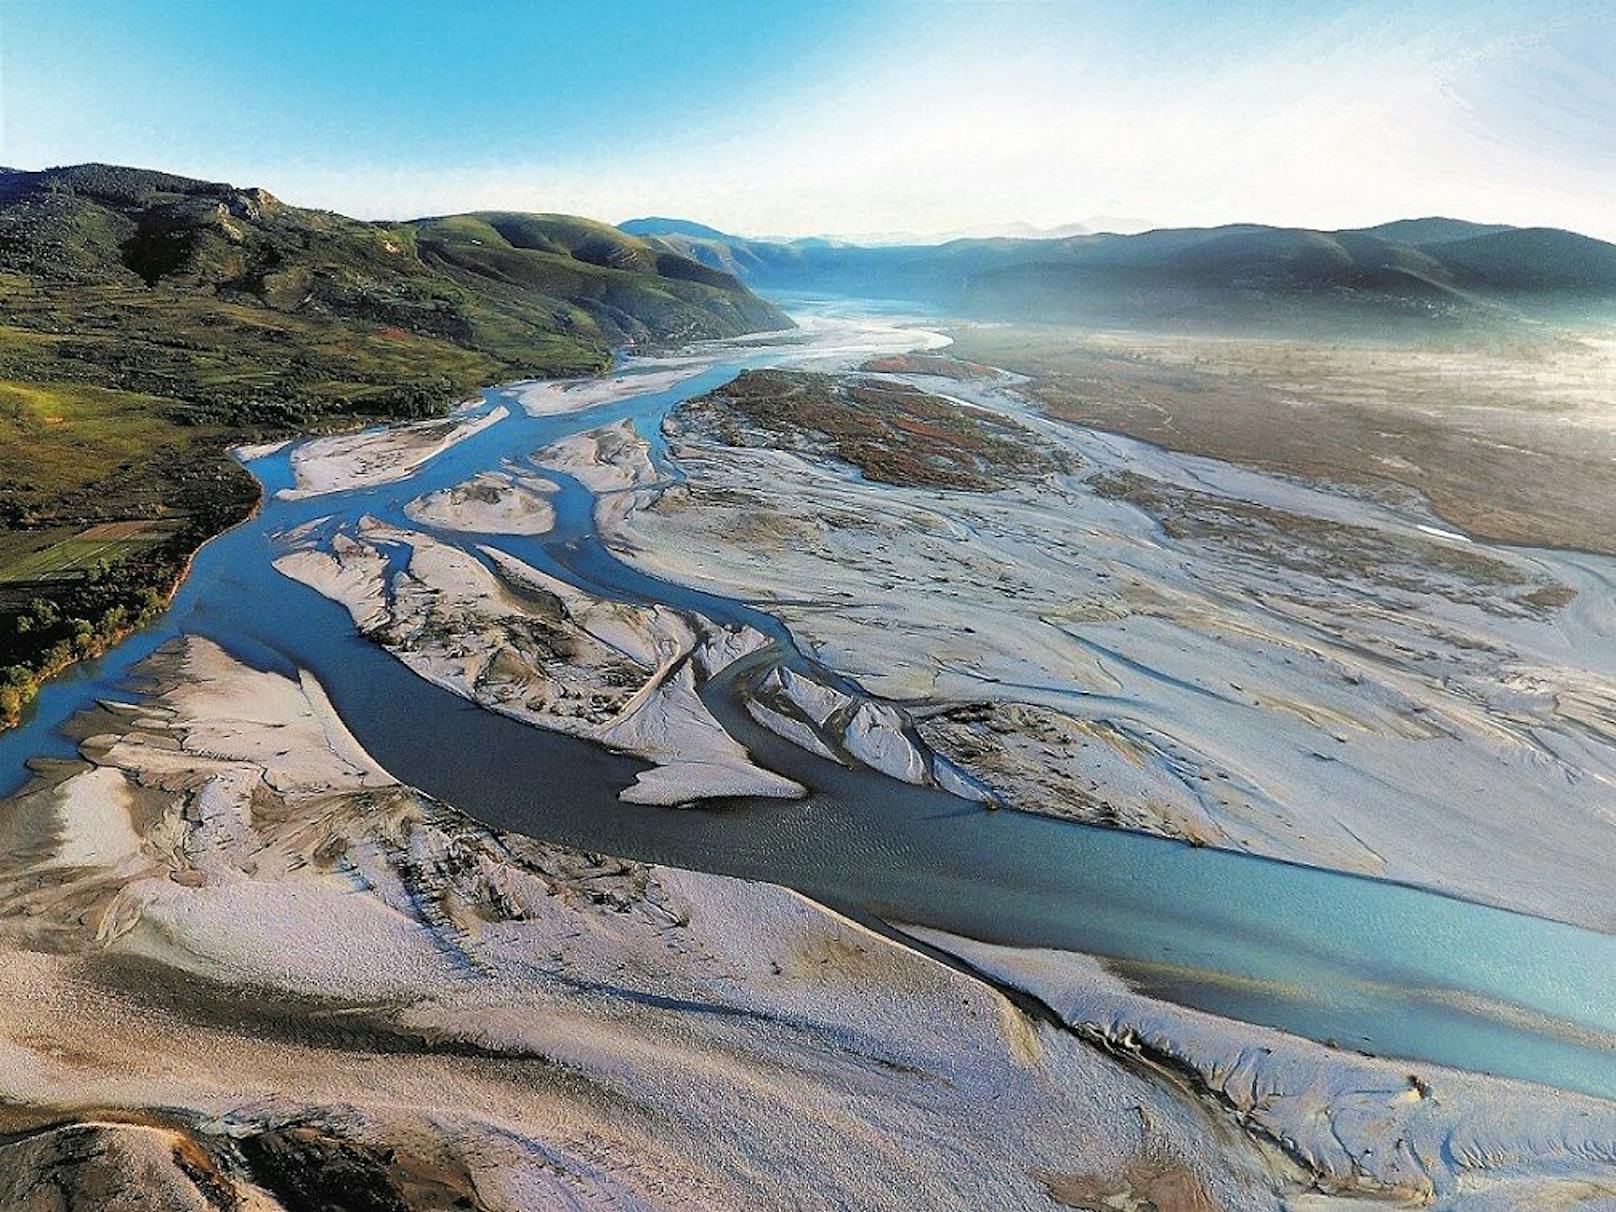 Ein riesen Erfolg für den Naturschutz: Der albanische Fluss Vjosa wird zum Nationalpark erklärt.